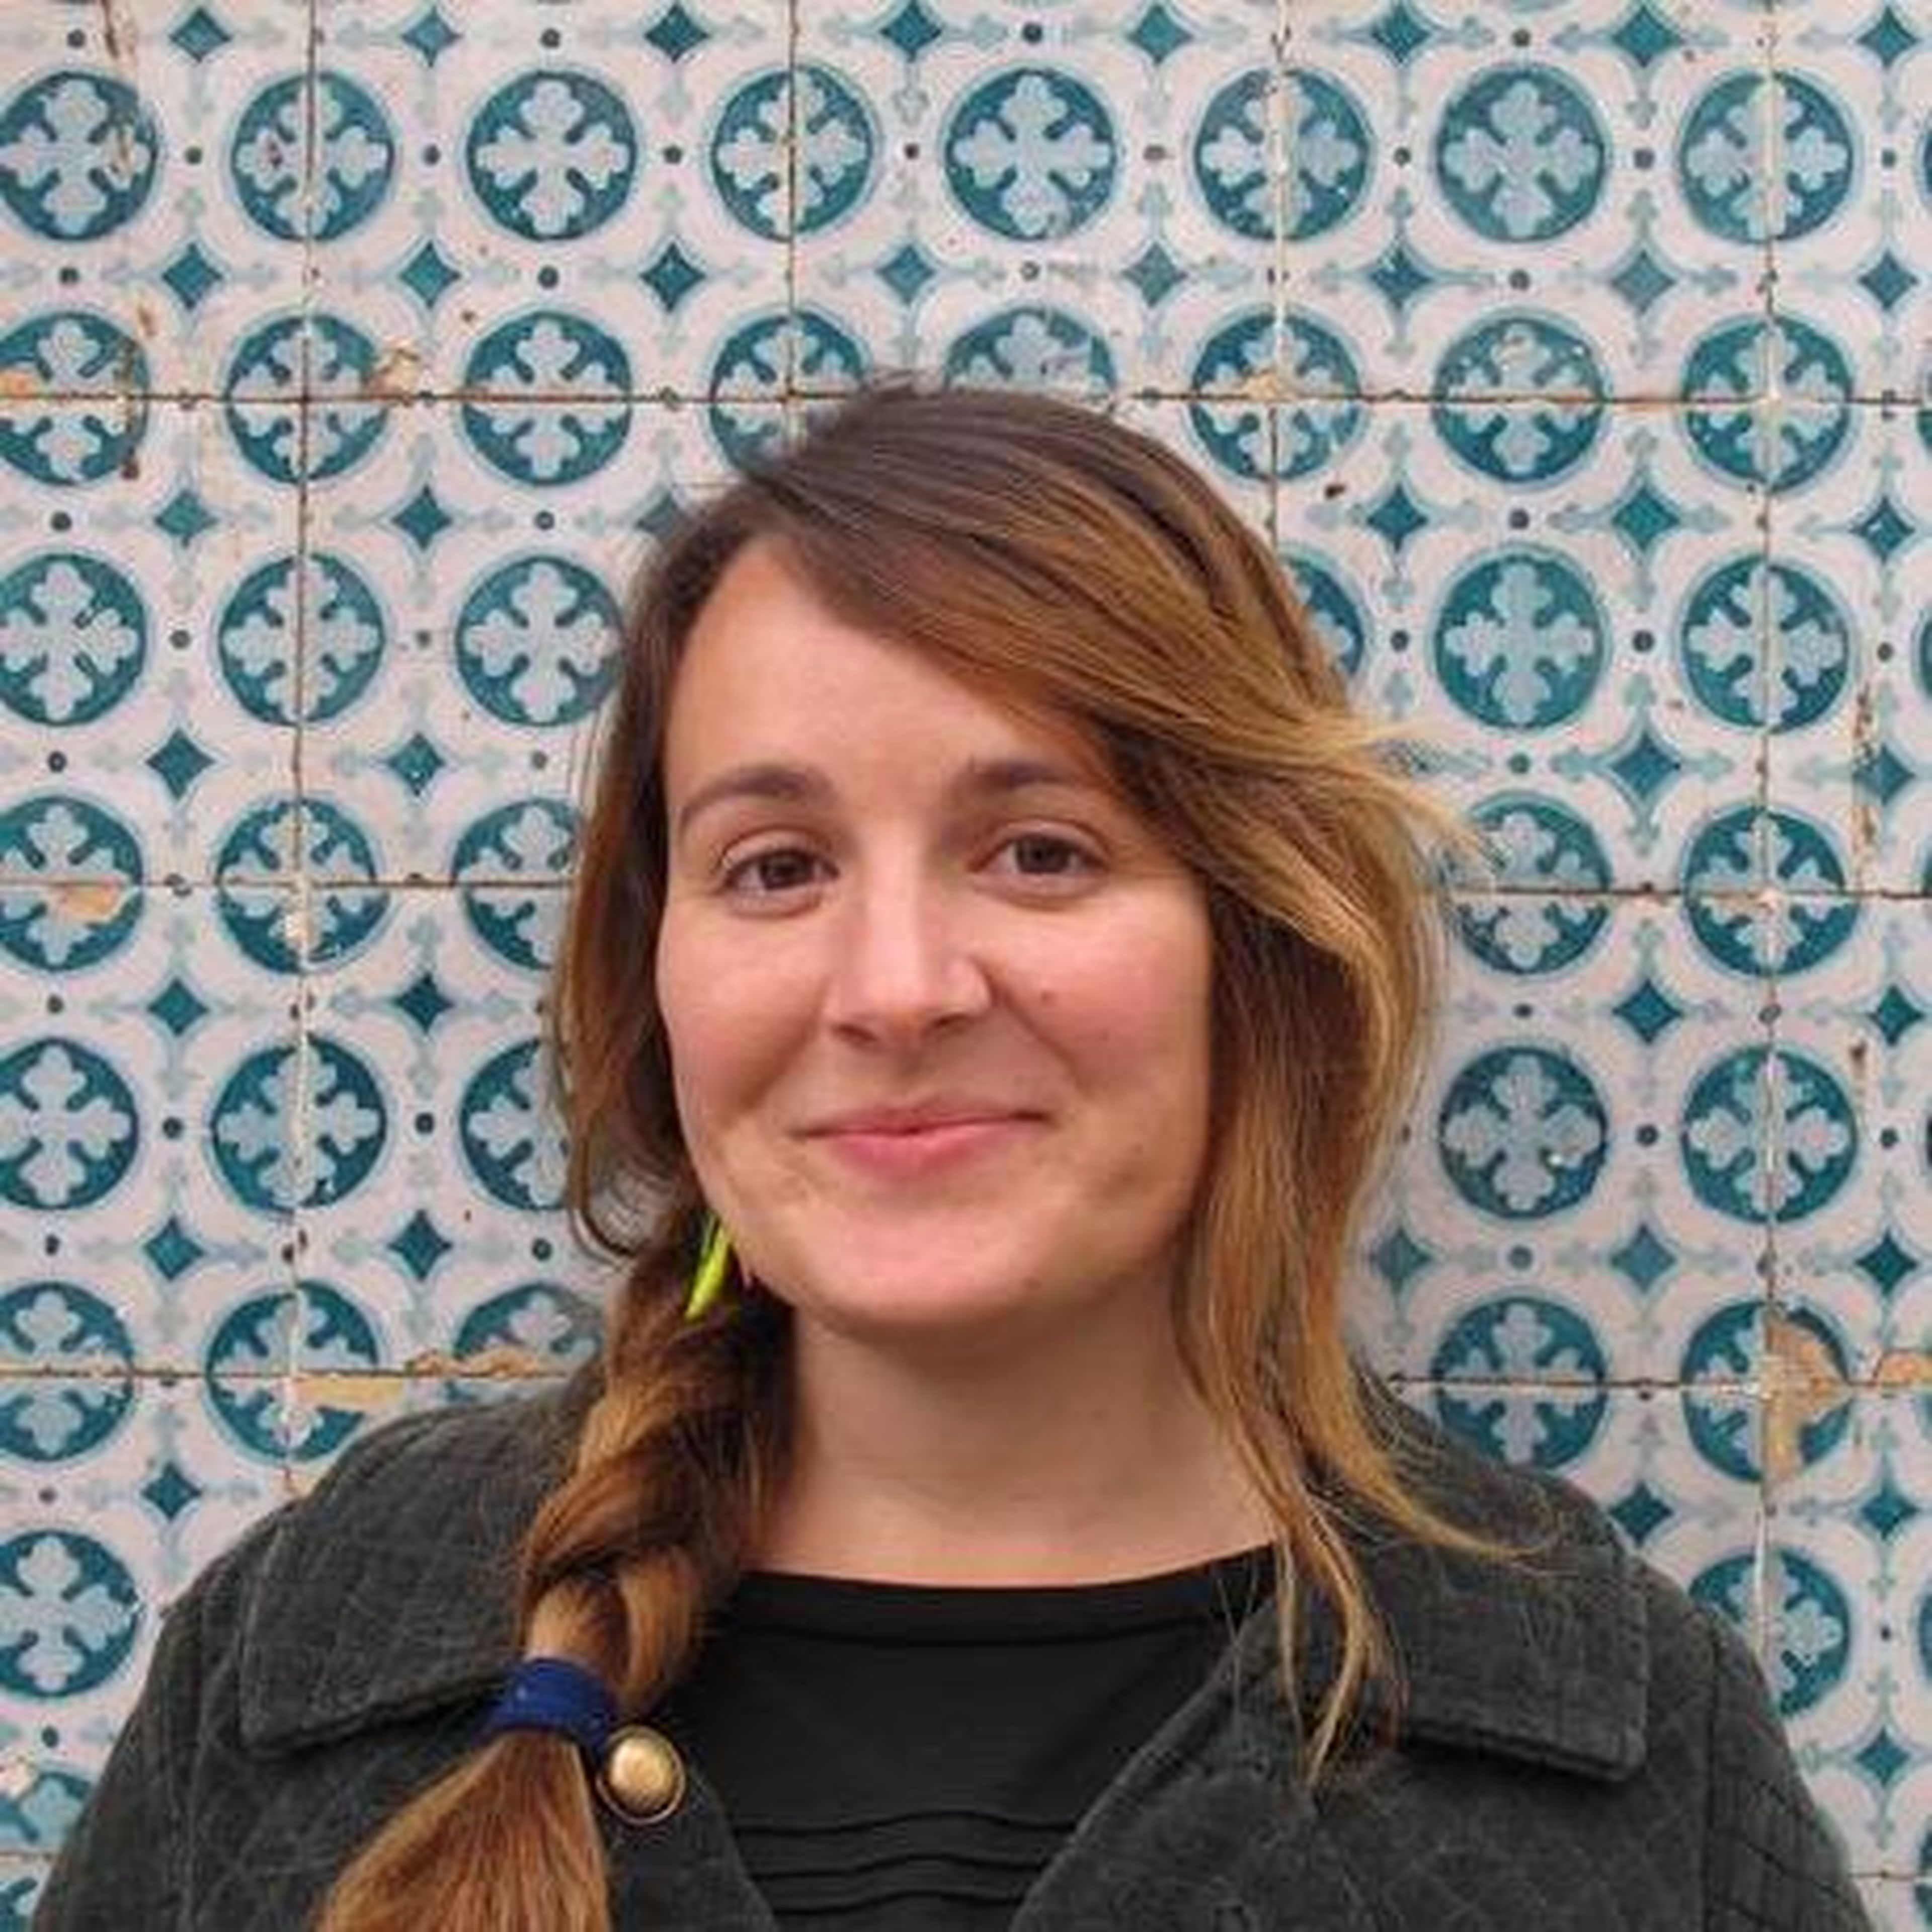 Sara Bertrán de Lis, la científica española que está detrás de los datos mundiales del coronavirus.